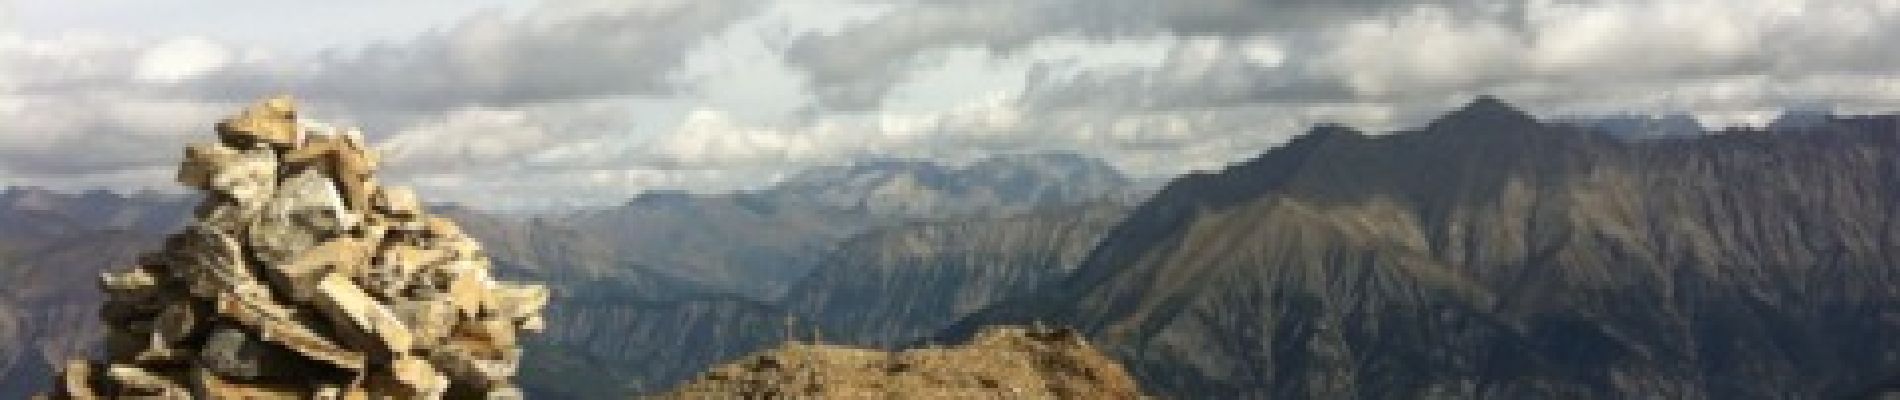 Randonnée Marche Enchastrayes - Croix de l Alpe - Photo